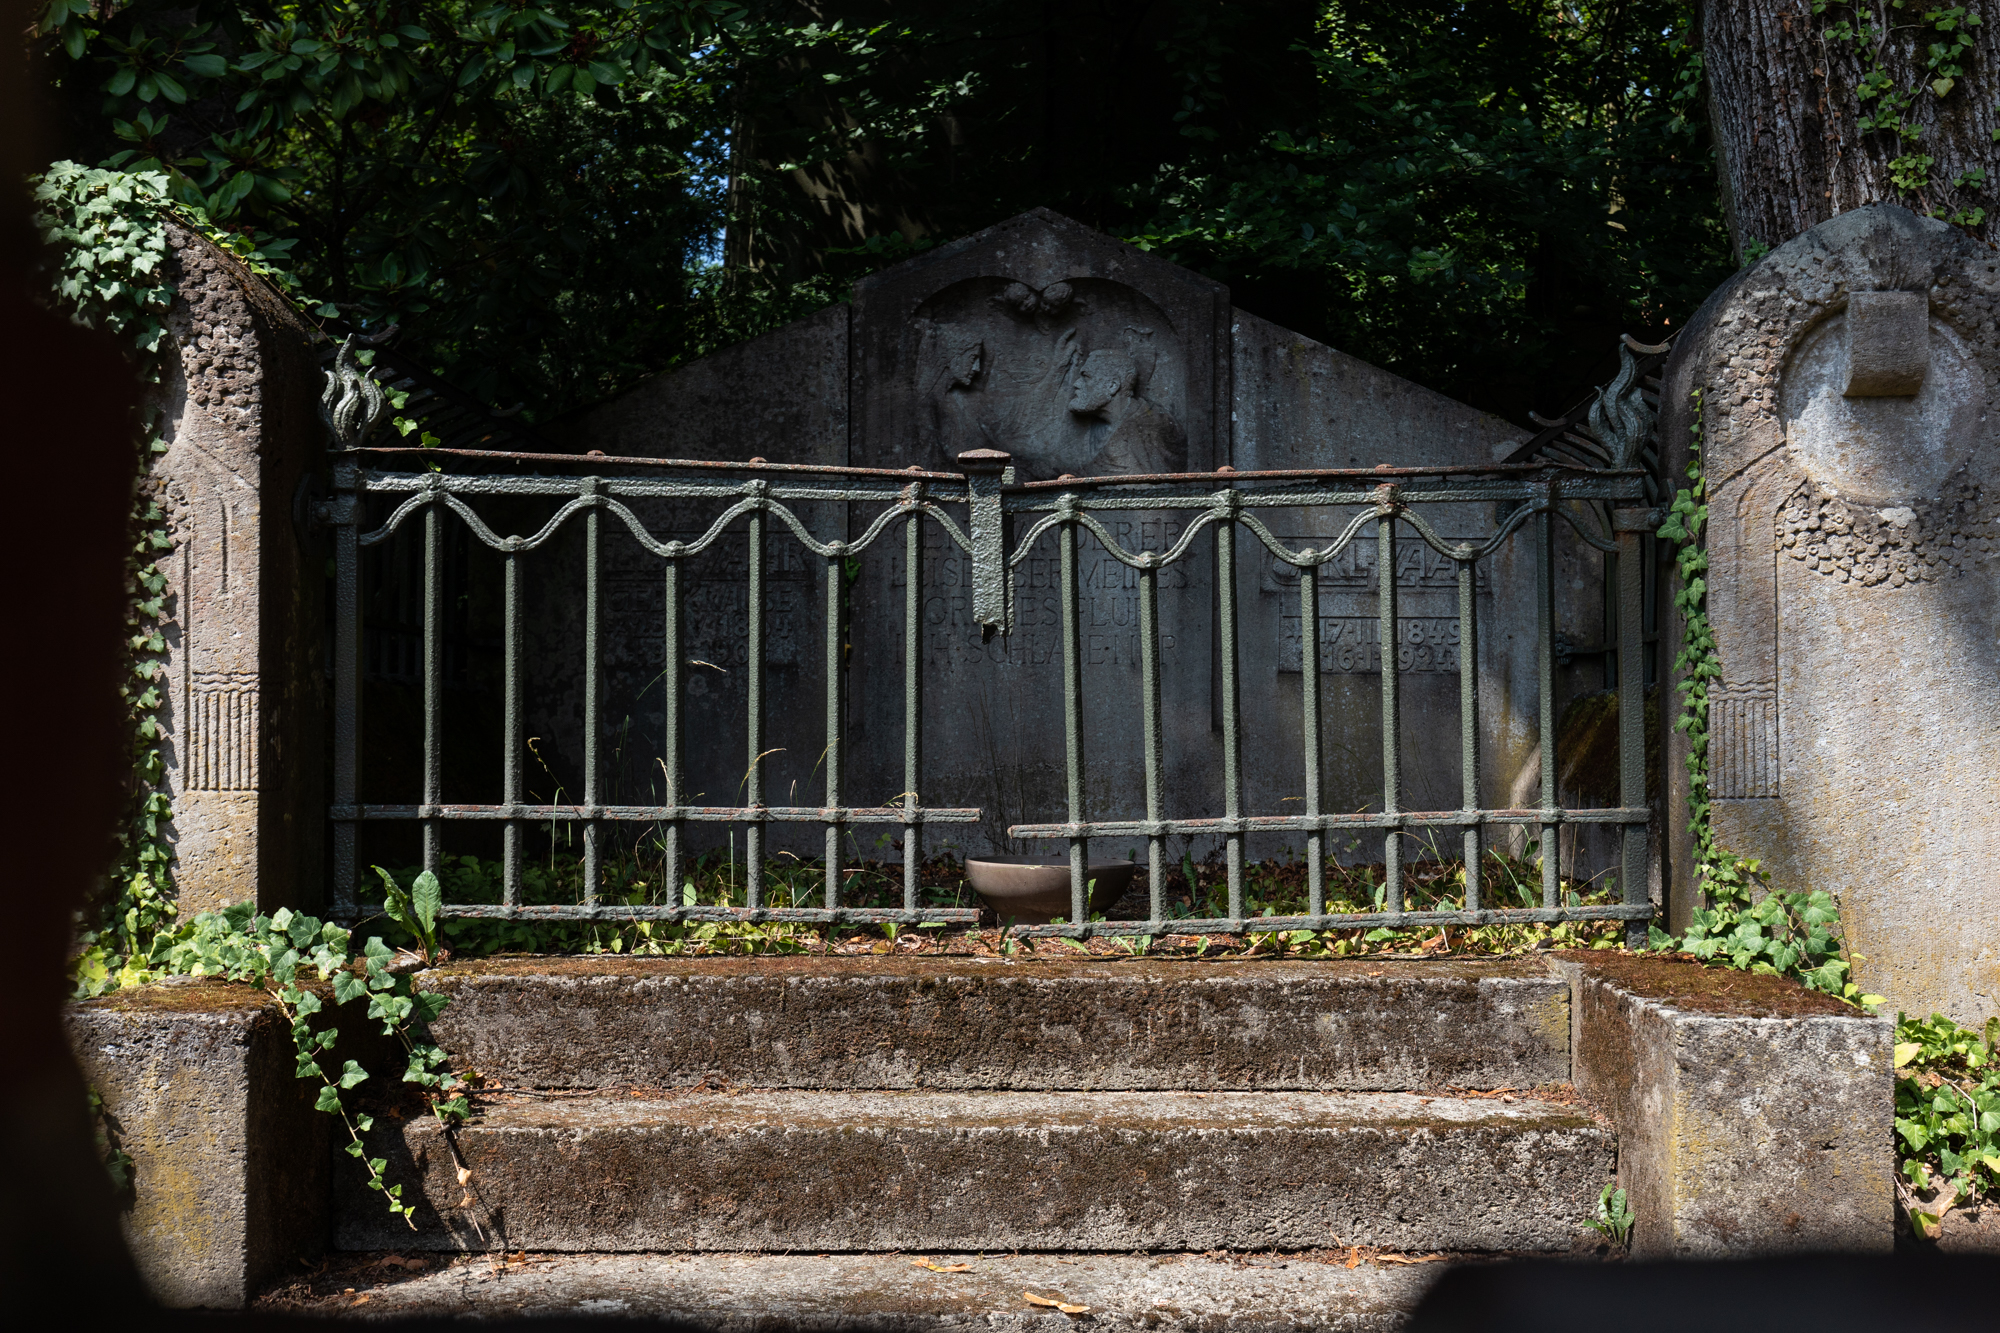 Grab im Friedhof in Klein Glienicke - eine ehemalige von West-Berlin durch die Berliner Mauer abgetrennte und nur mit Sondergenehmigung zugängliche ostdeutsche Enklave